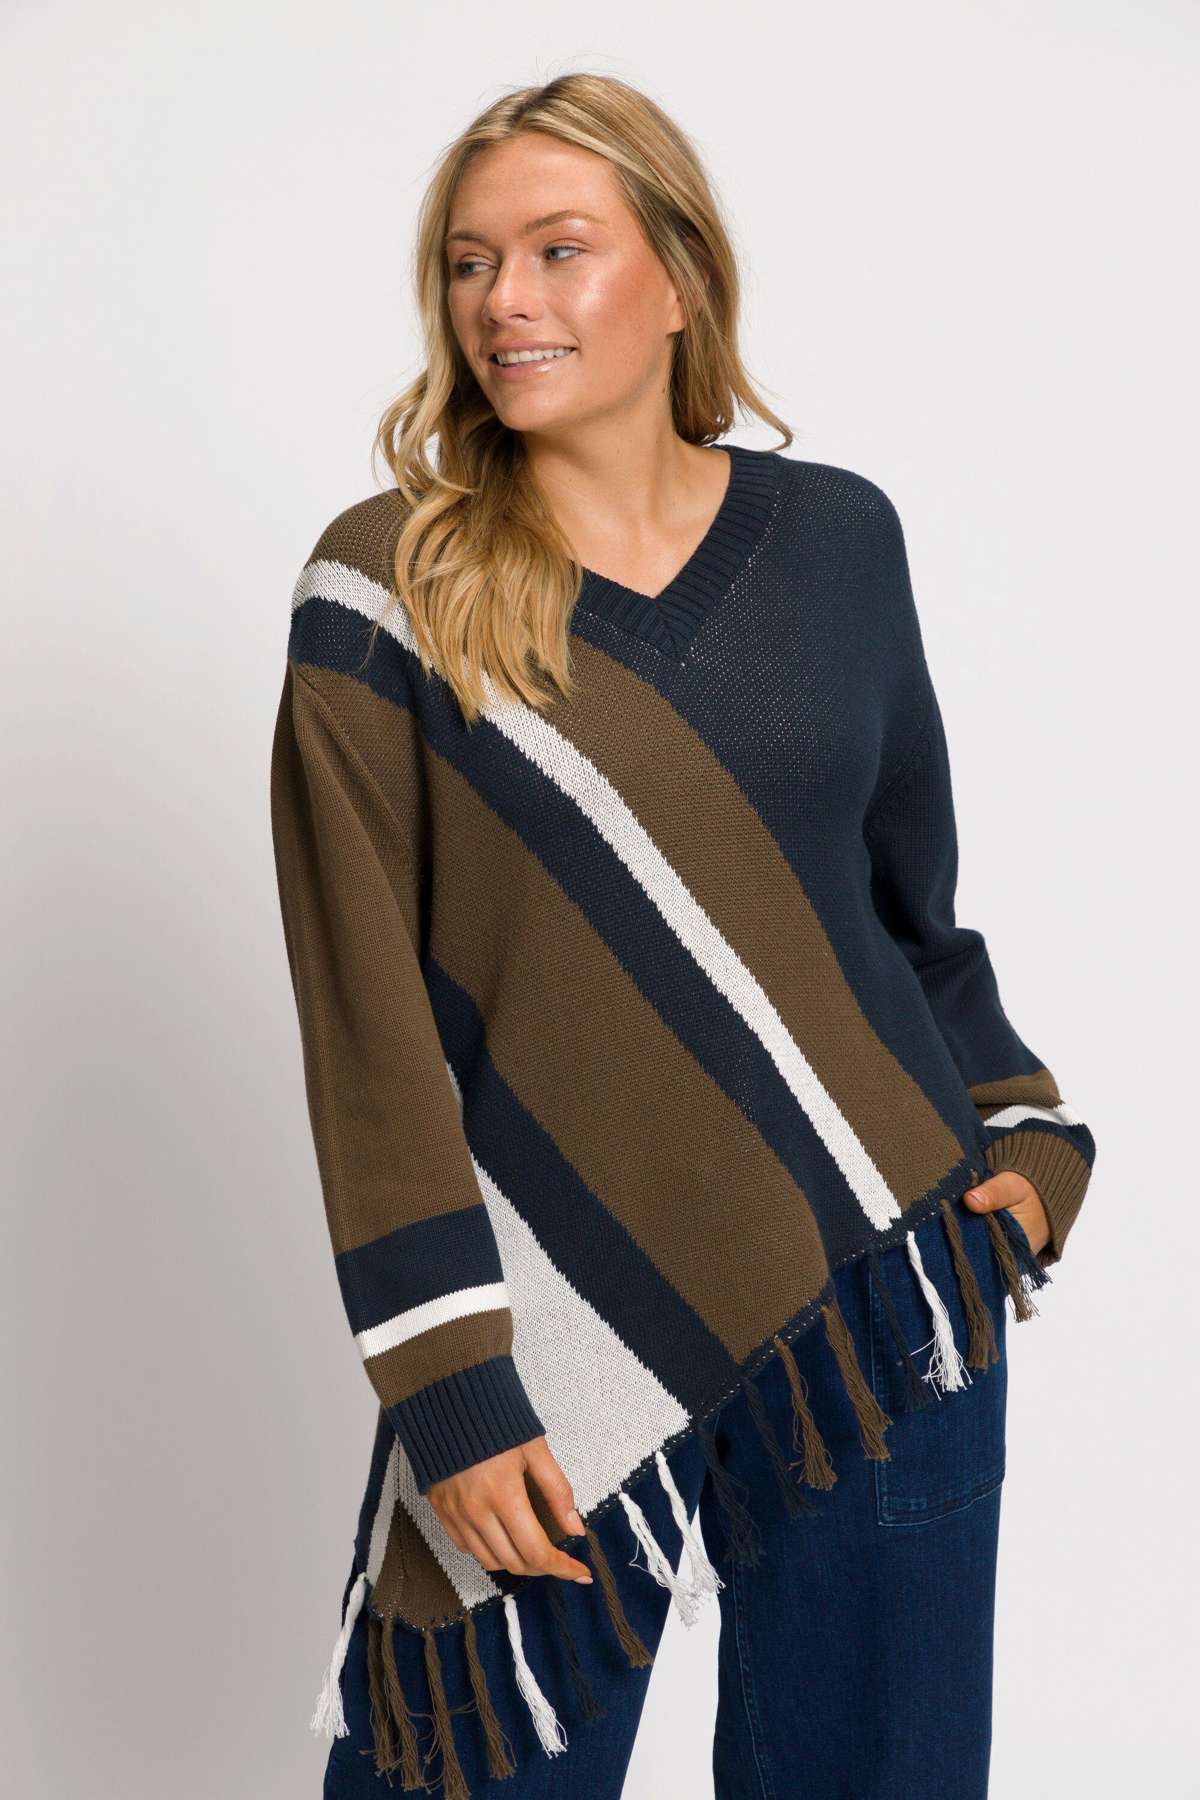 Пуловер с высоким воротником, подол платка, V-образный вырез, длинный рукав